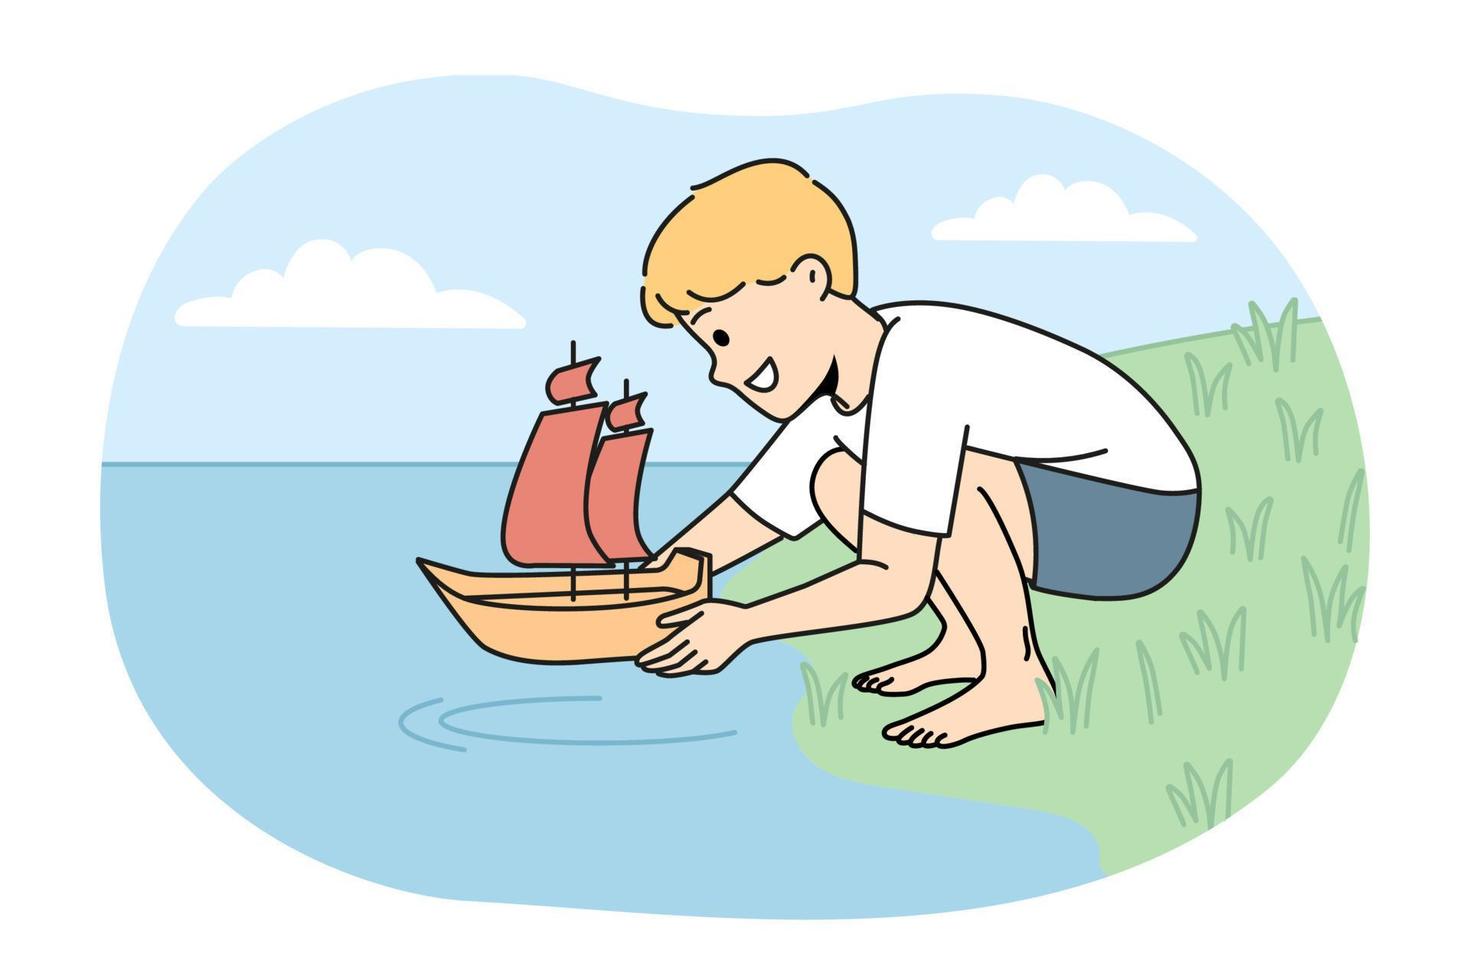 glücklich Junge Kind mit Spielzeug Boot spielen auf Fluss Bank. lächelnd Kind starten Schiff im Wasser haben Spaß auf Meer Ufer. Vektor Illustration.